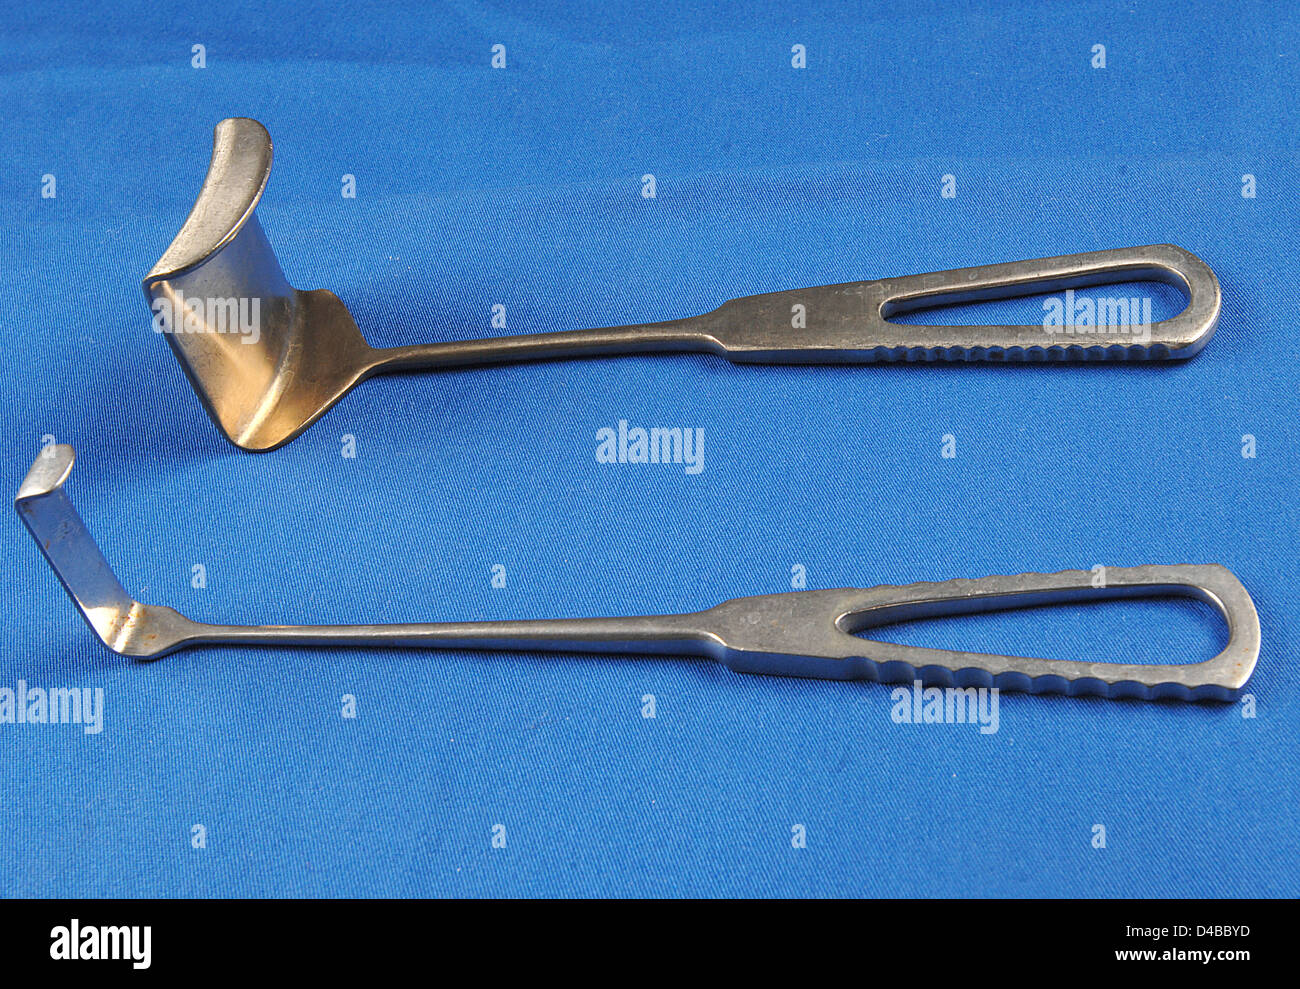 Diese handheld Retraktoren dienen zur Wunde Exposition während eine Vielzahl von verschiedenen chirurgischen Operationen zu gewährleisten. Stockfoto